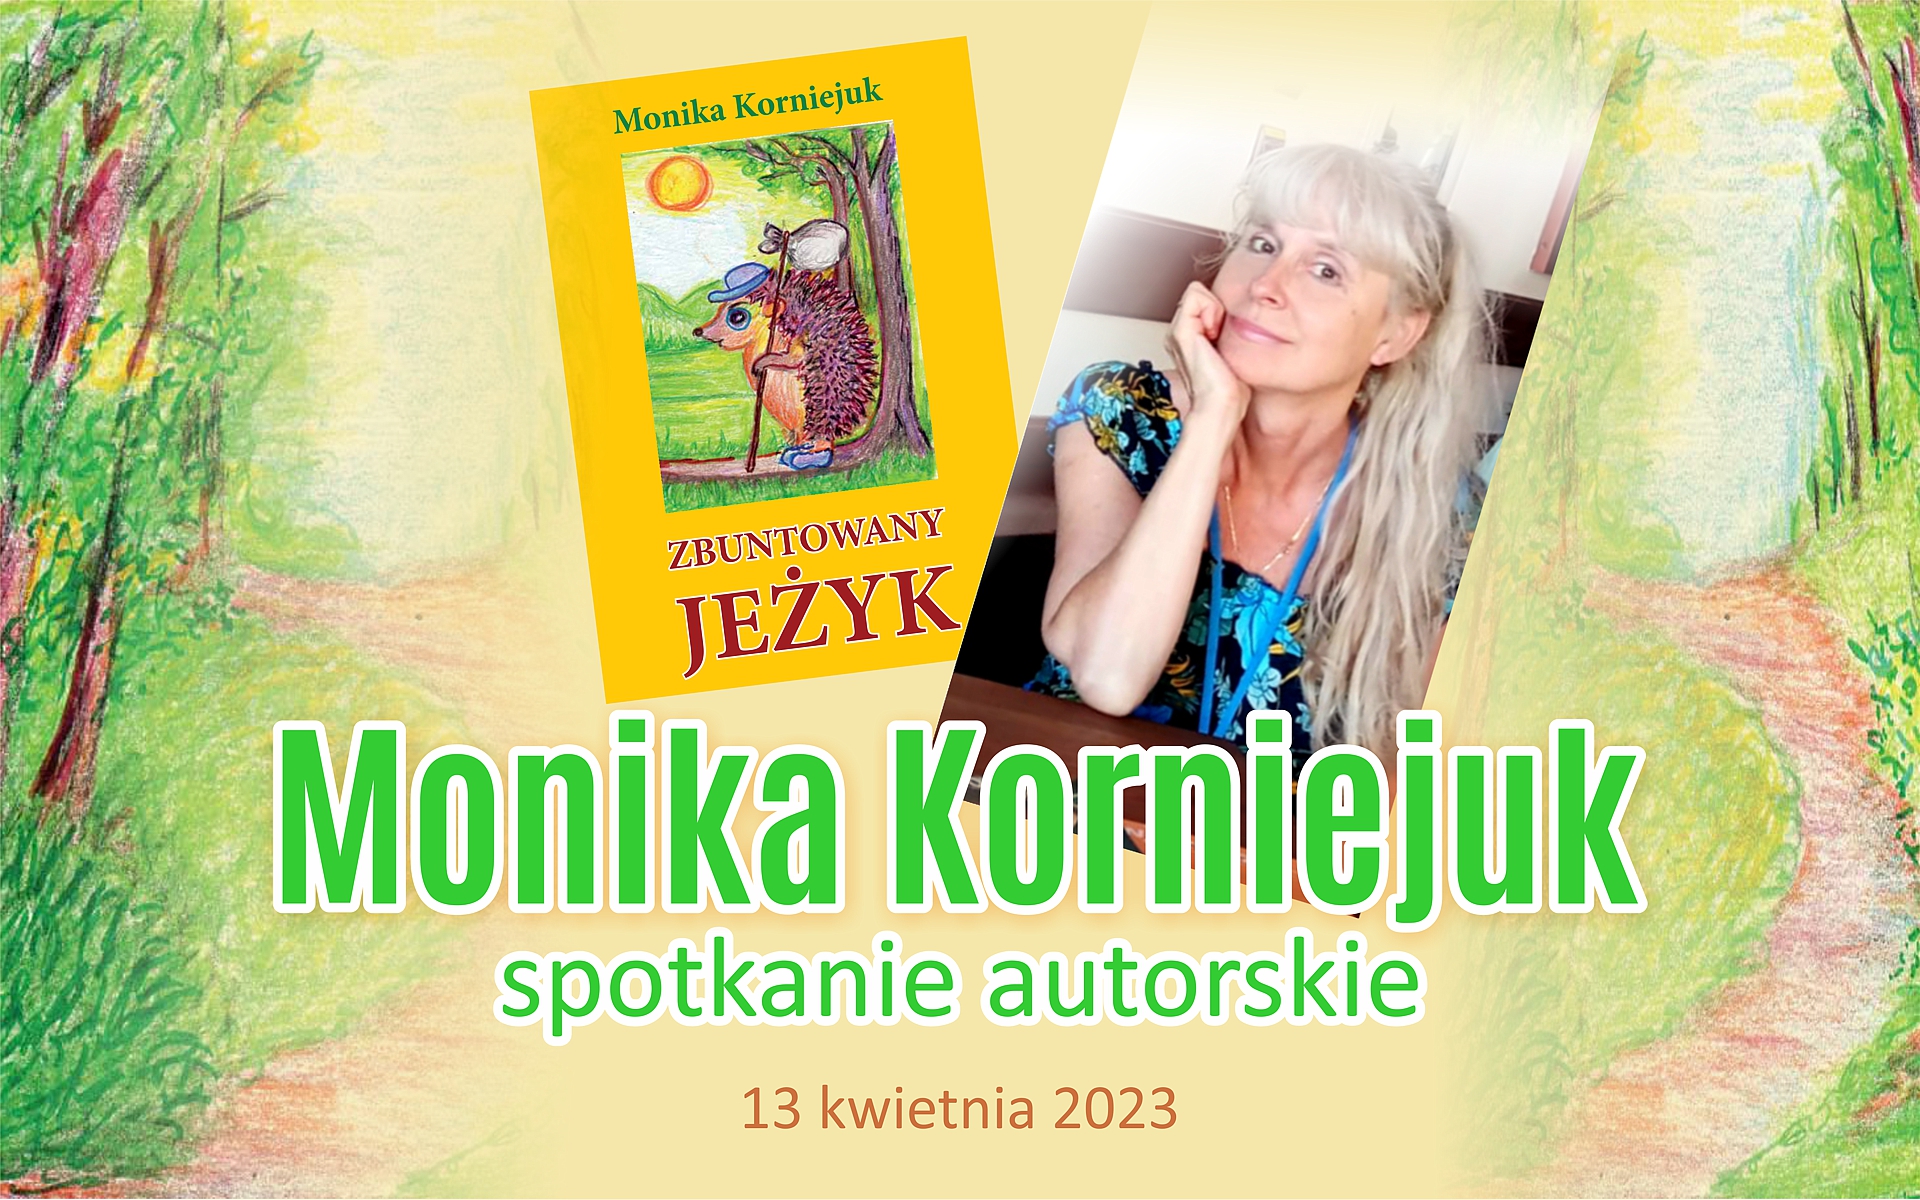 Monika Korniejuk spotkanie autorskie